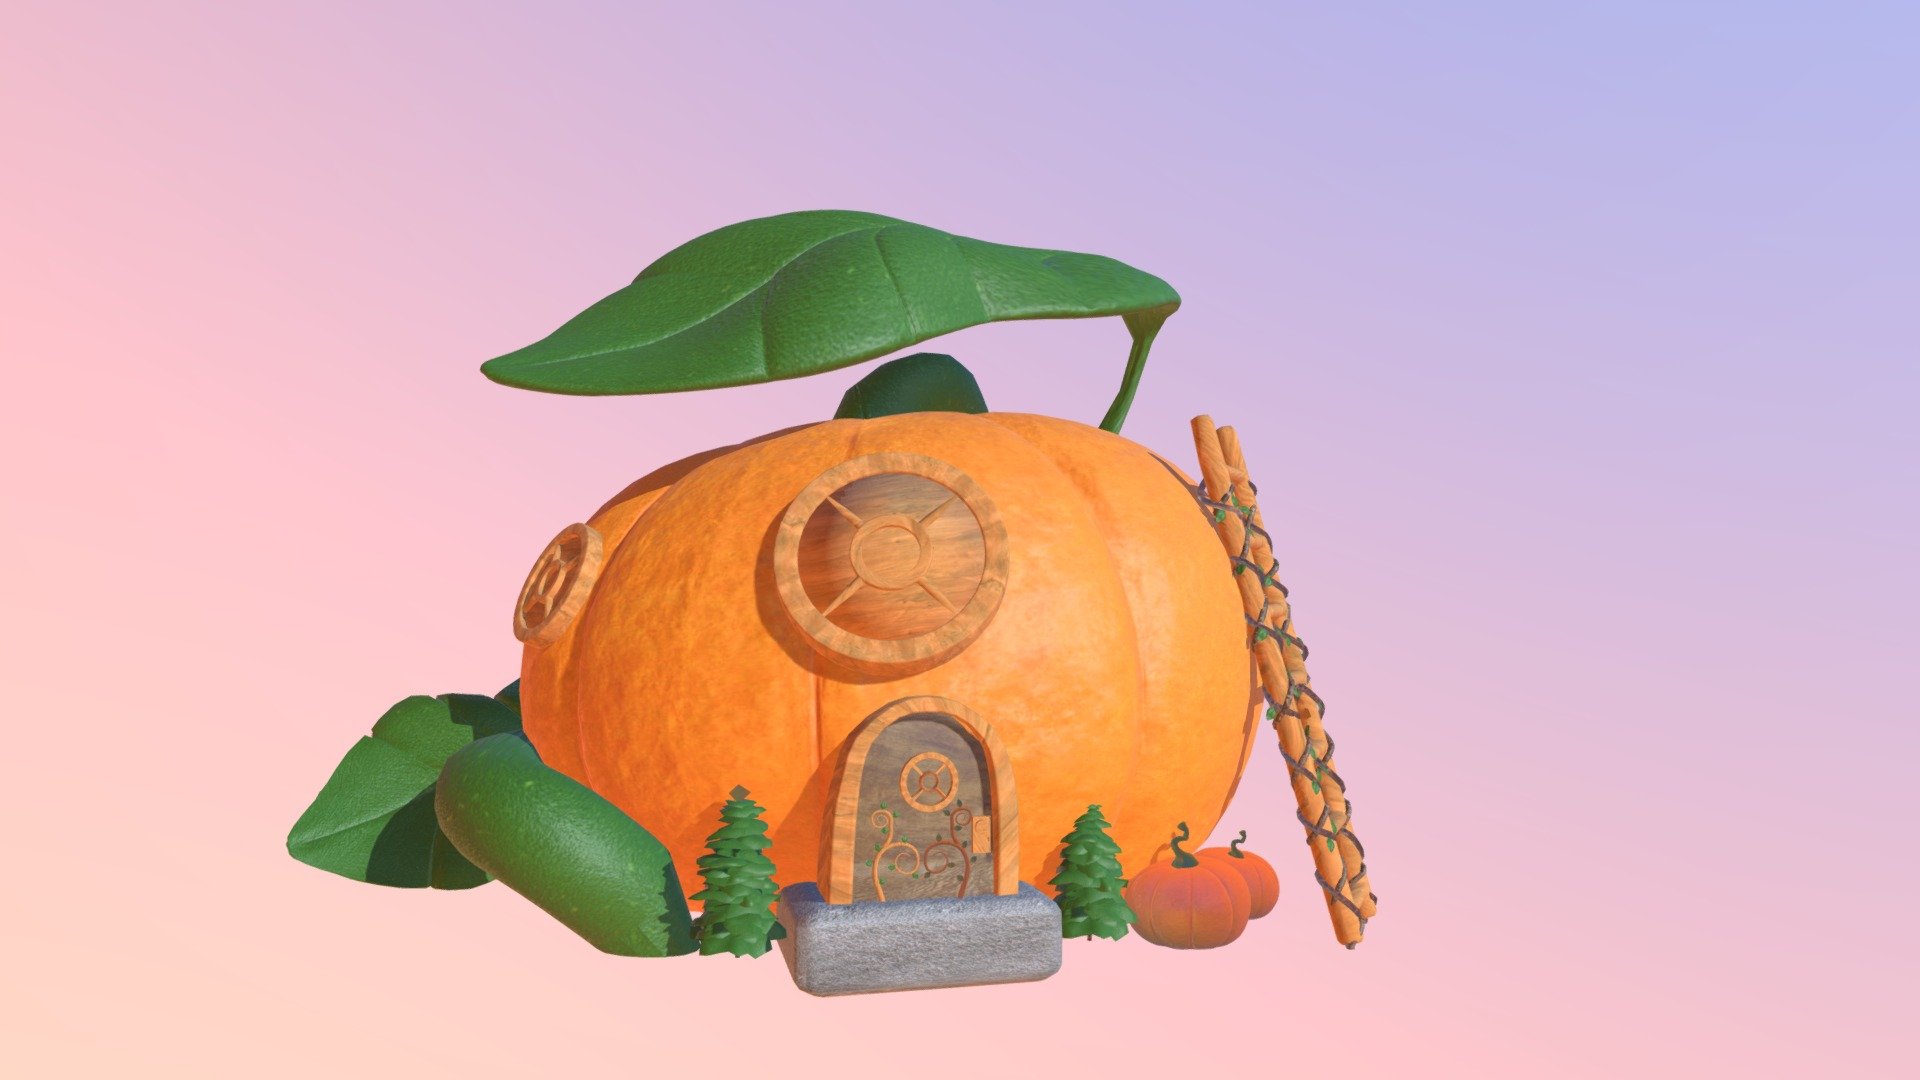 Pumpkin house2 - Buy Royalty Free 3D model by pofuann 3d model